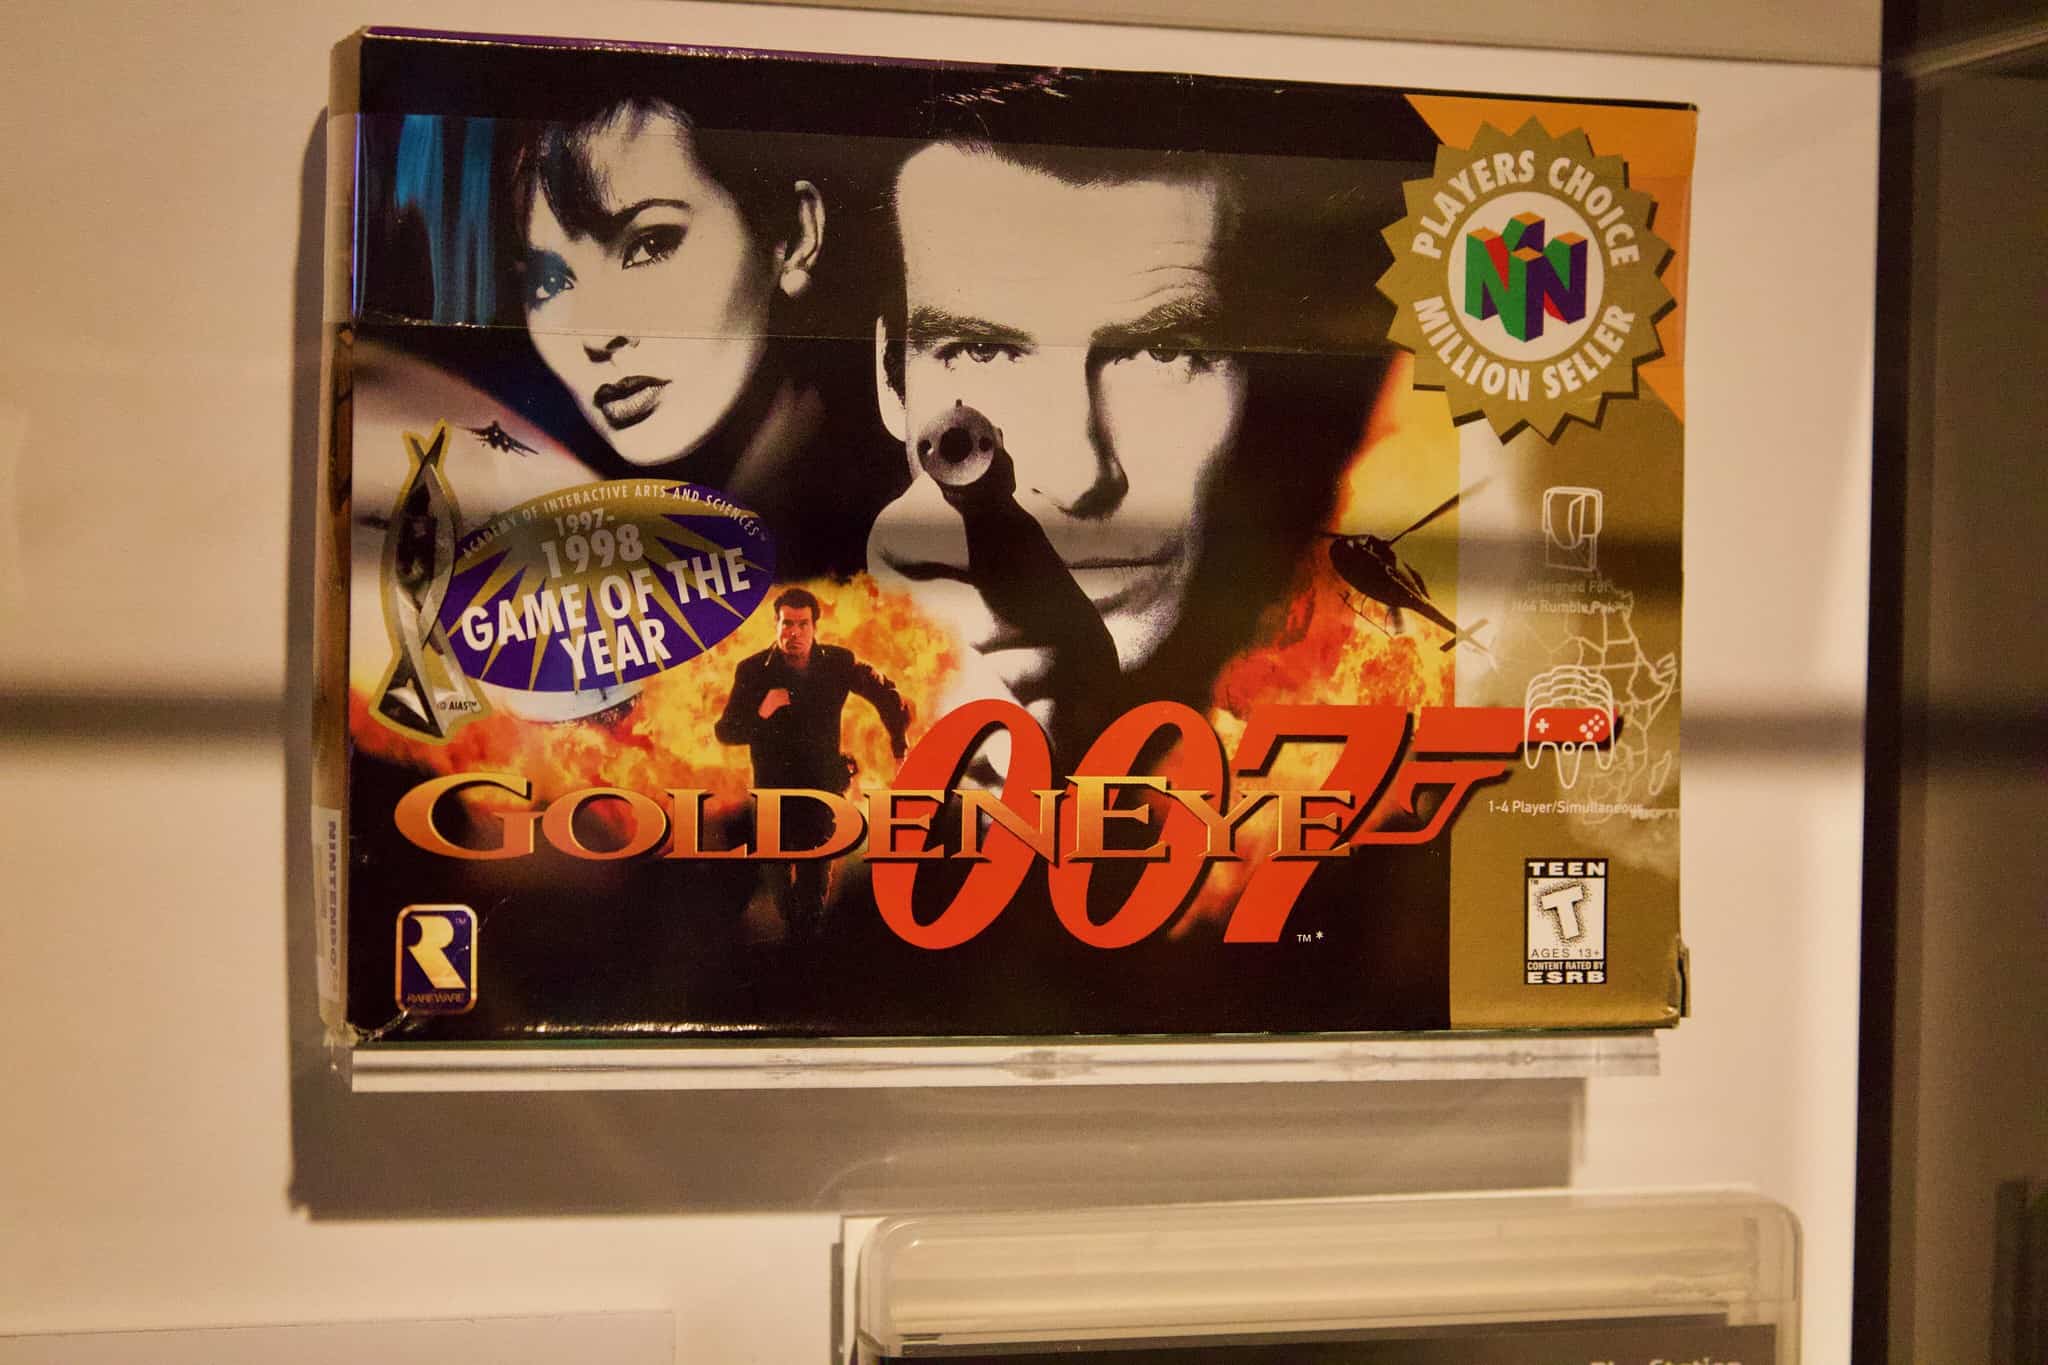 golden eye 007 on a computer screen